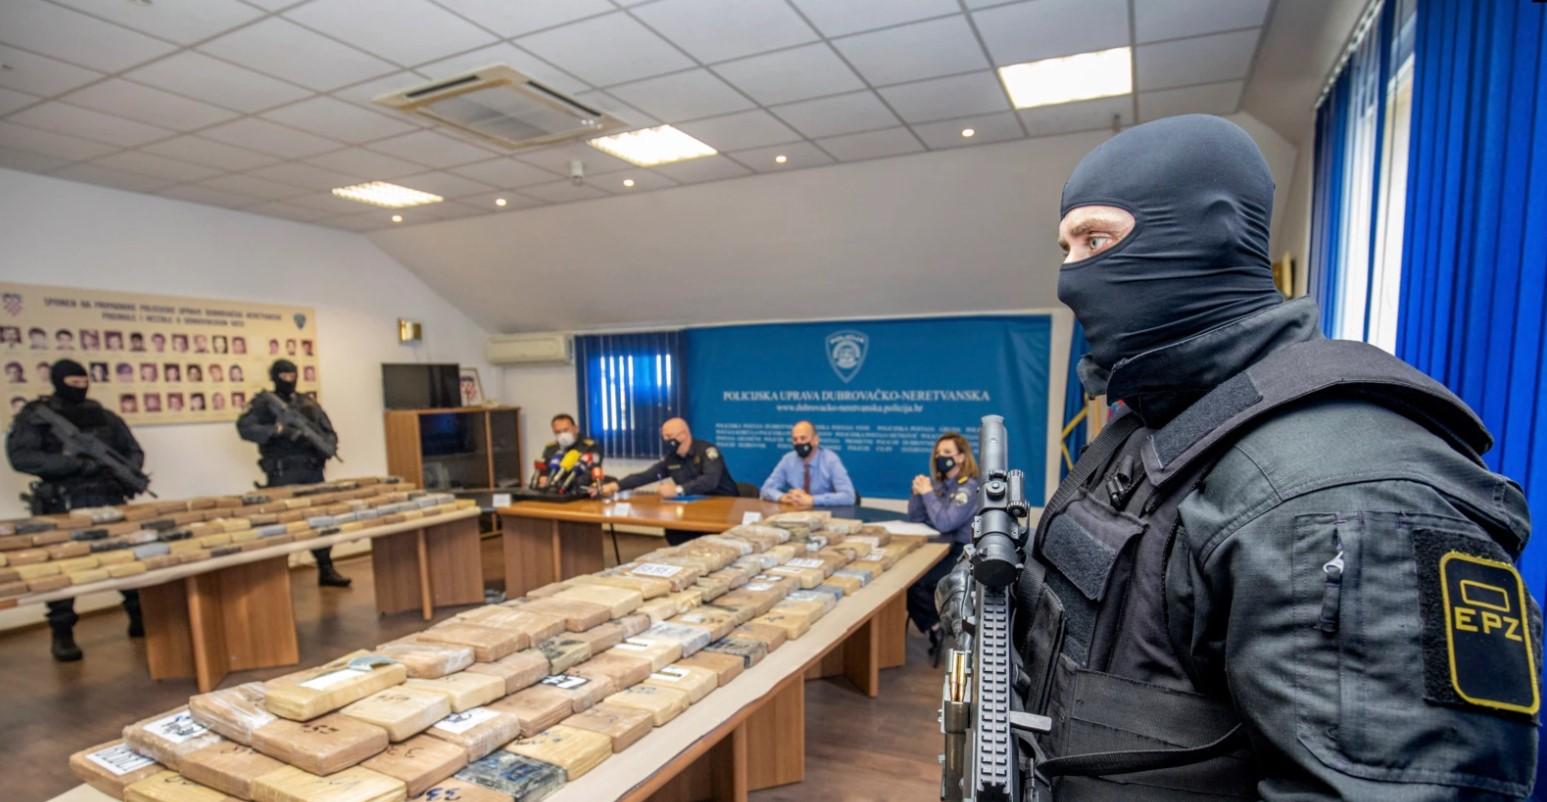 Paketi kokaina koje je zaplijenila hrvatska policija blizu luke Ploče - Avaz